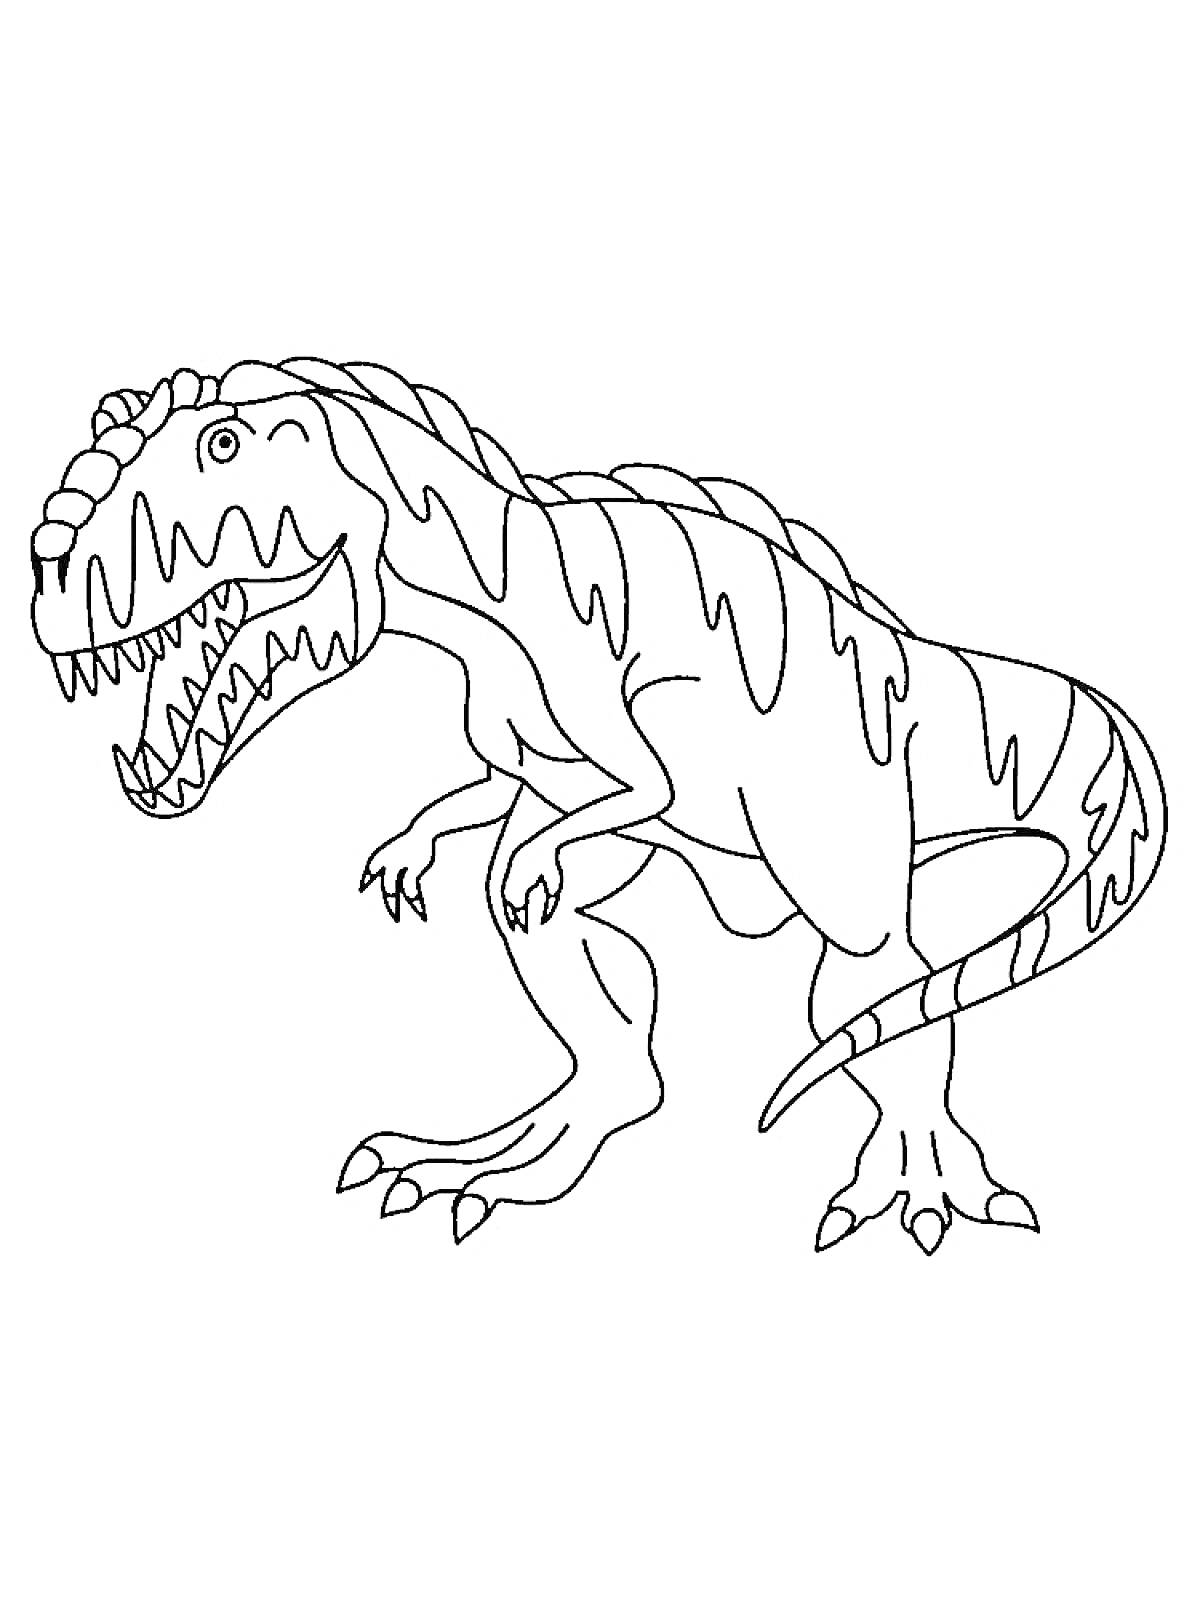 Раскраска Тираннозавр с открытой пастью и полосатыми узорами на теле